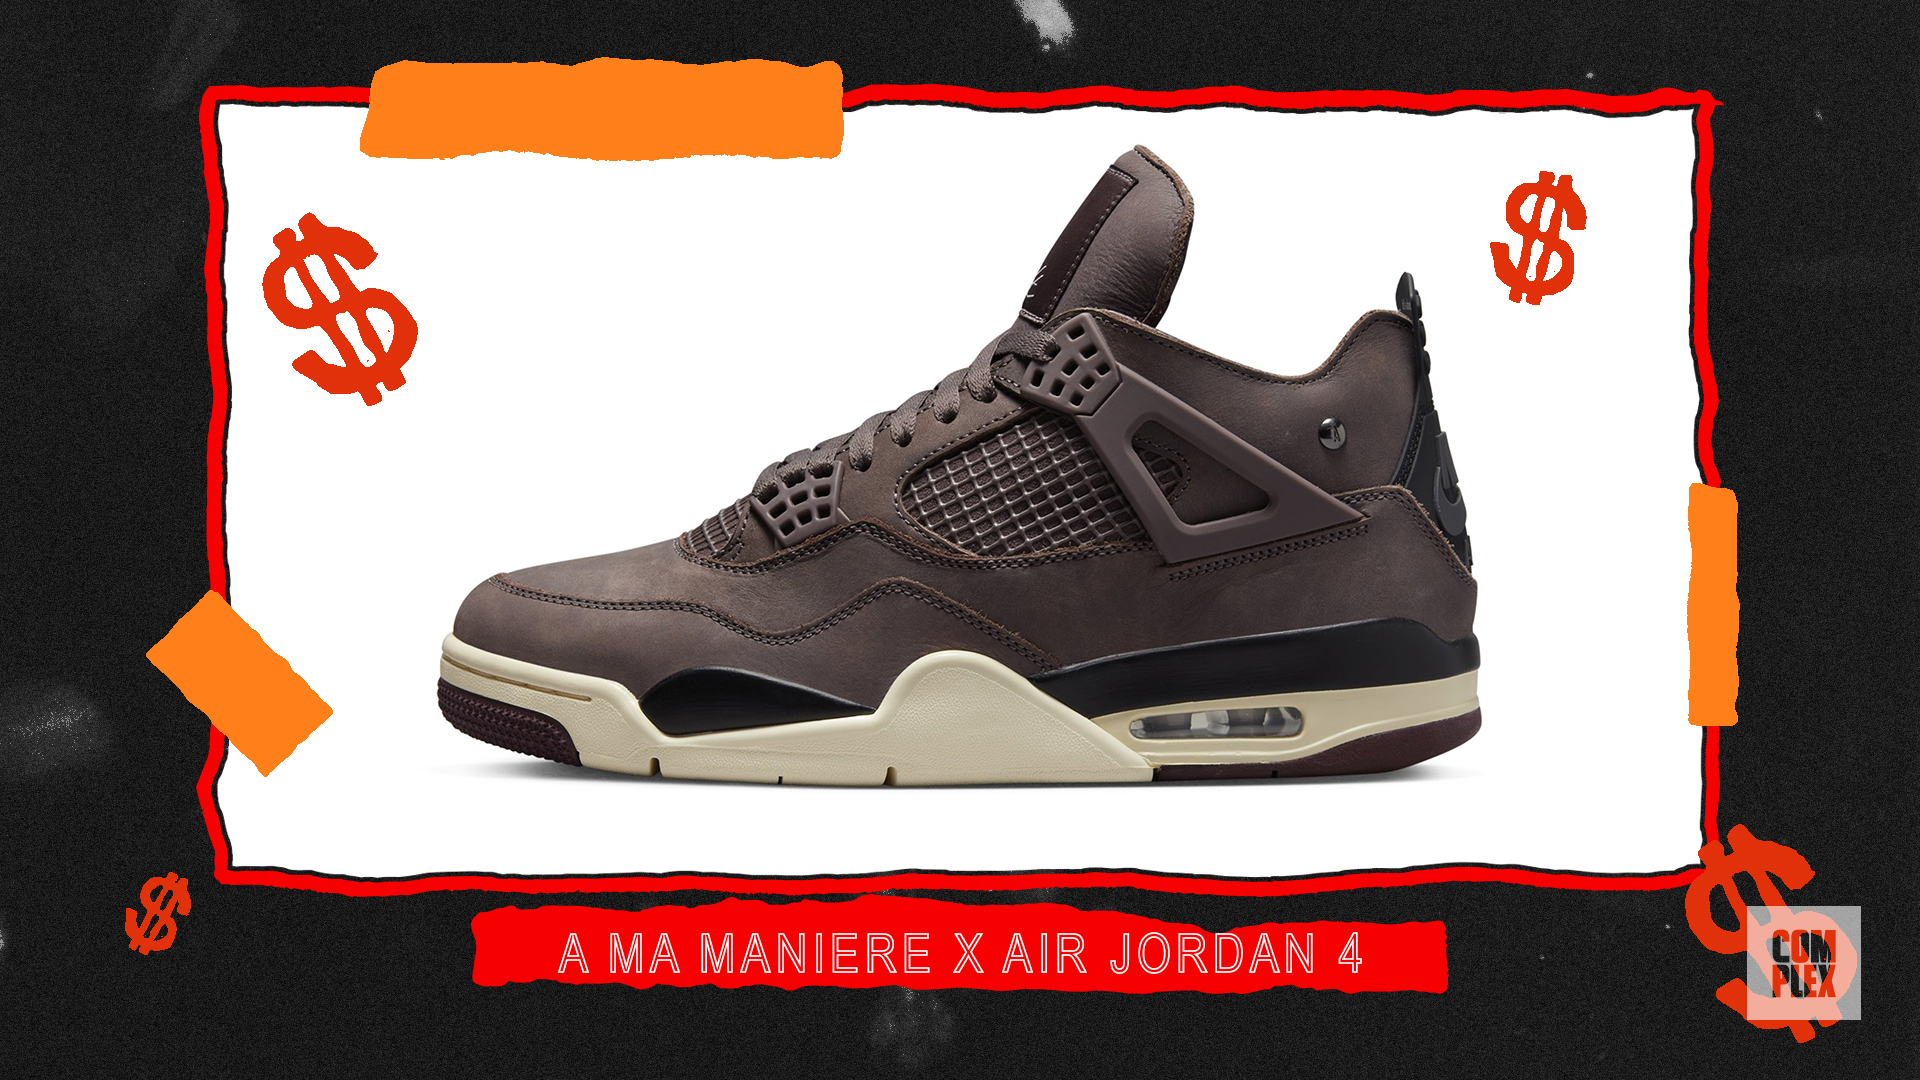 A Ma Maniere x Air Jordan 4